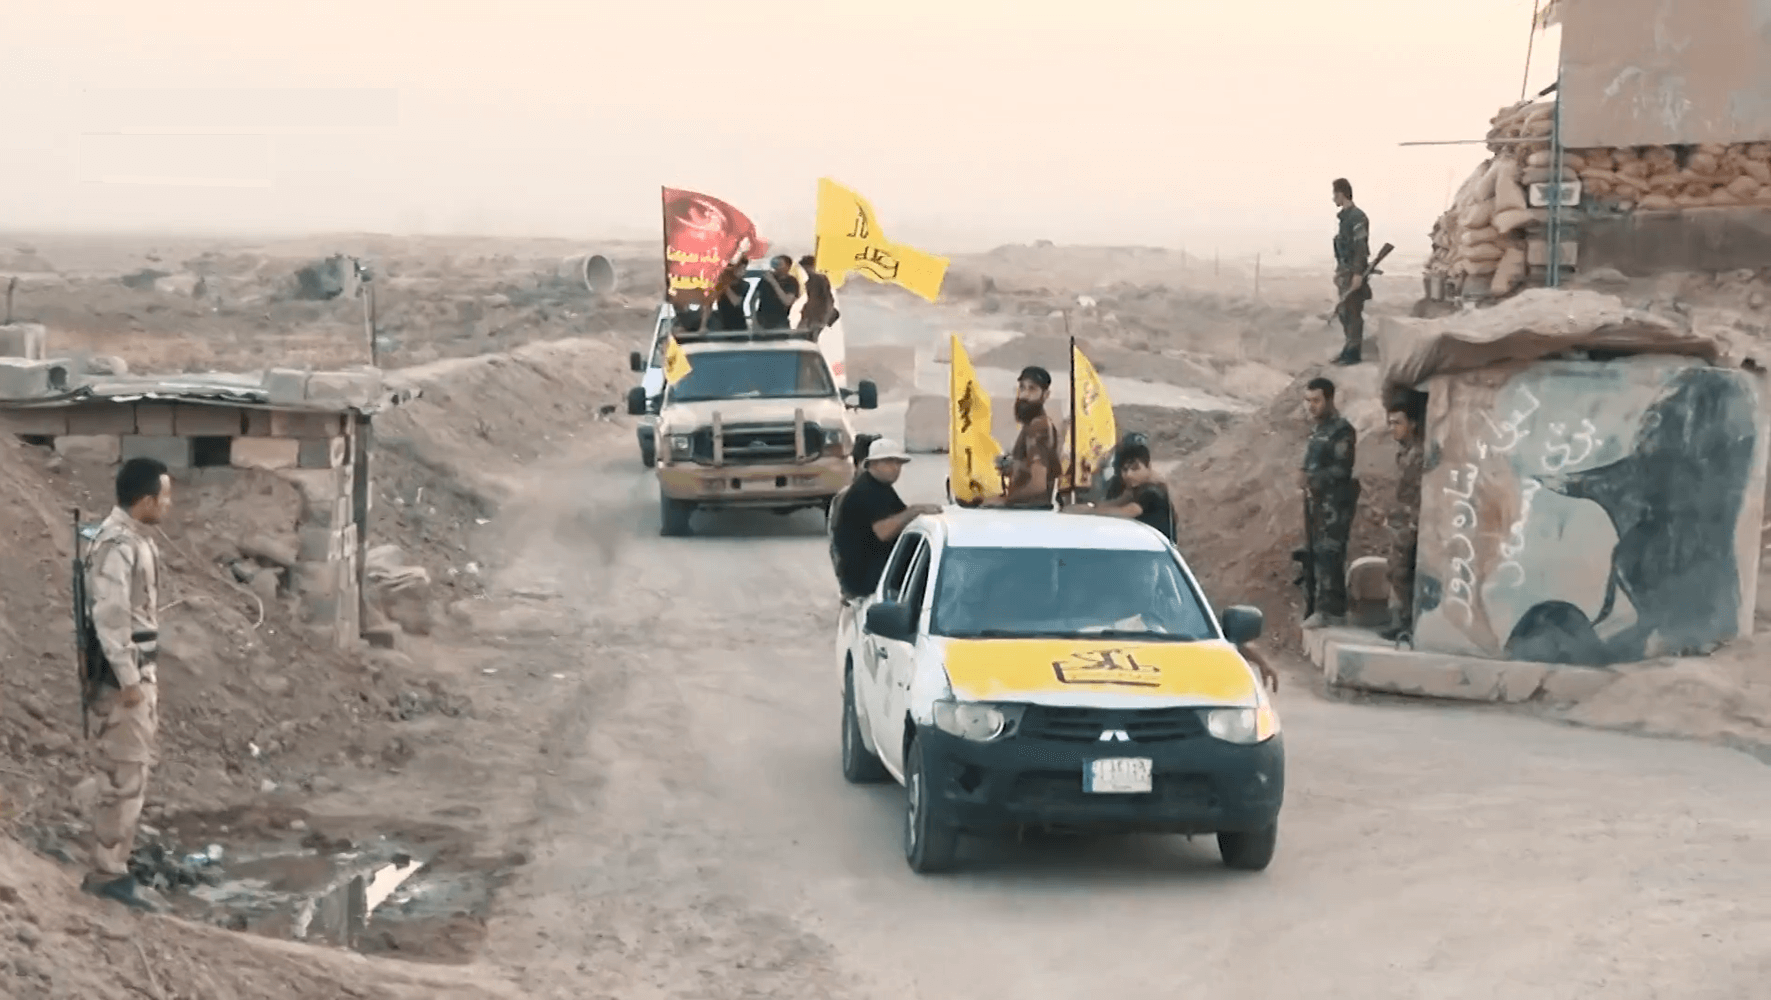 Ugur-Militia in Irak tijdens het Hawija-offensief in 2017. Wikimedia